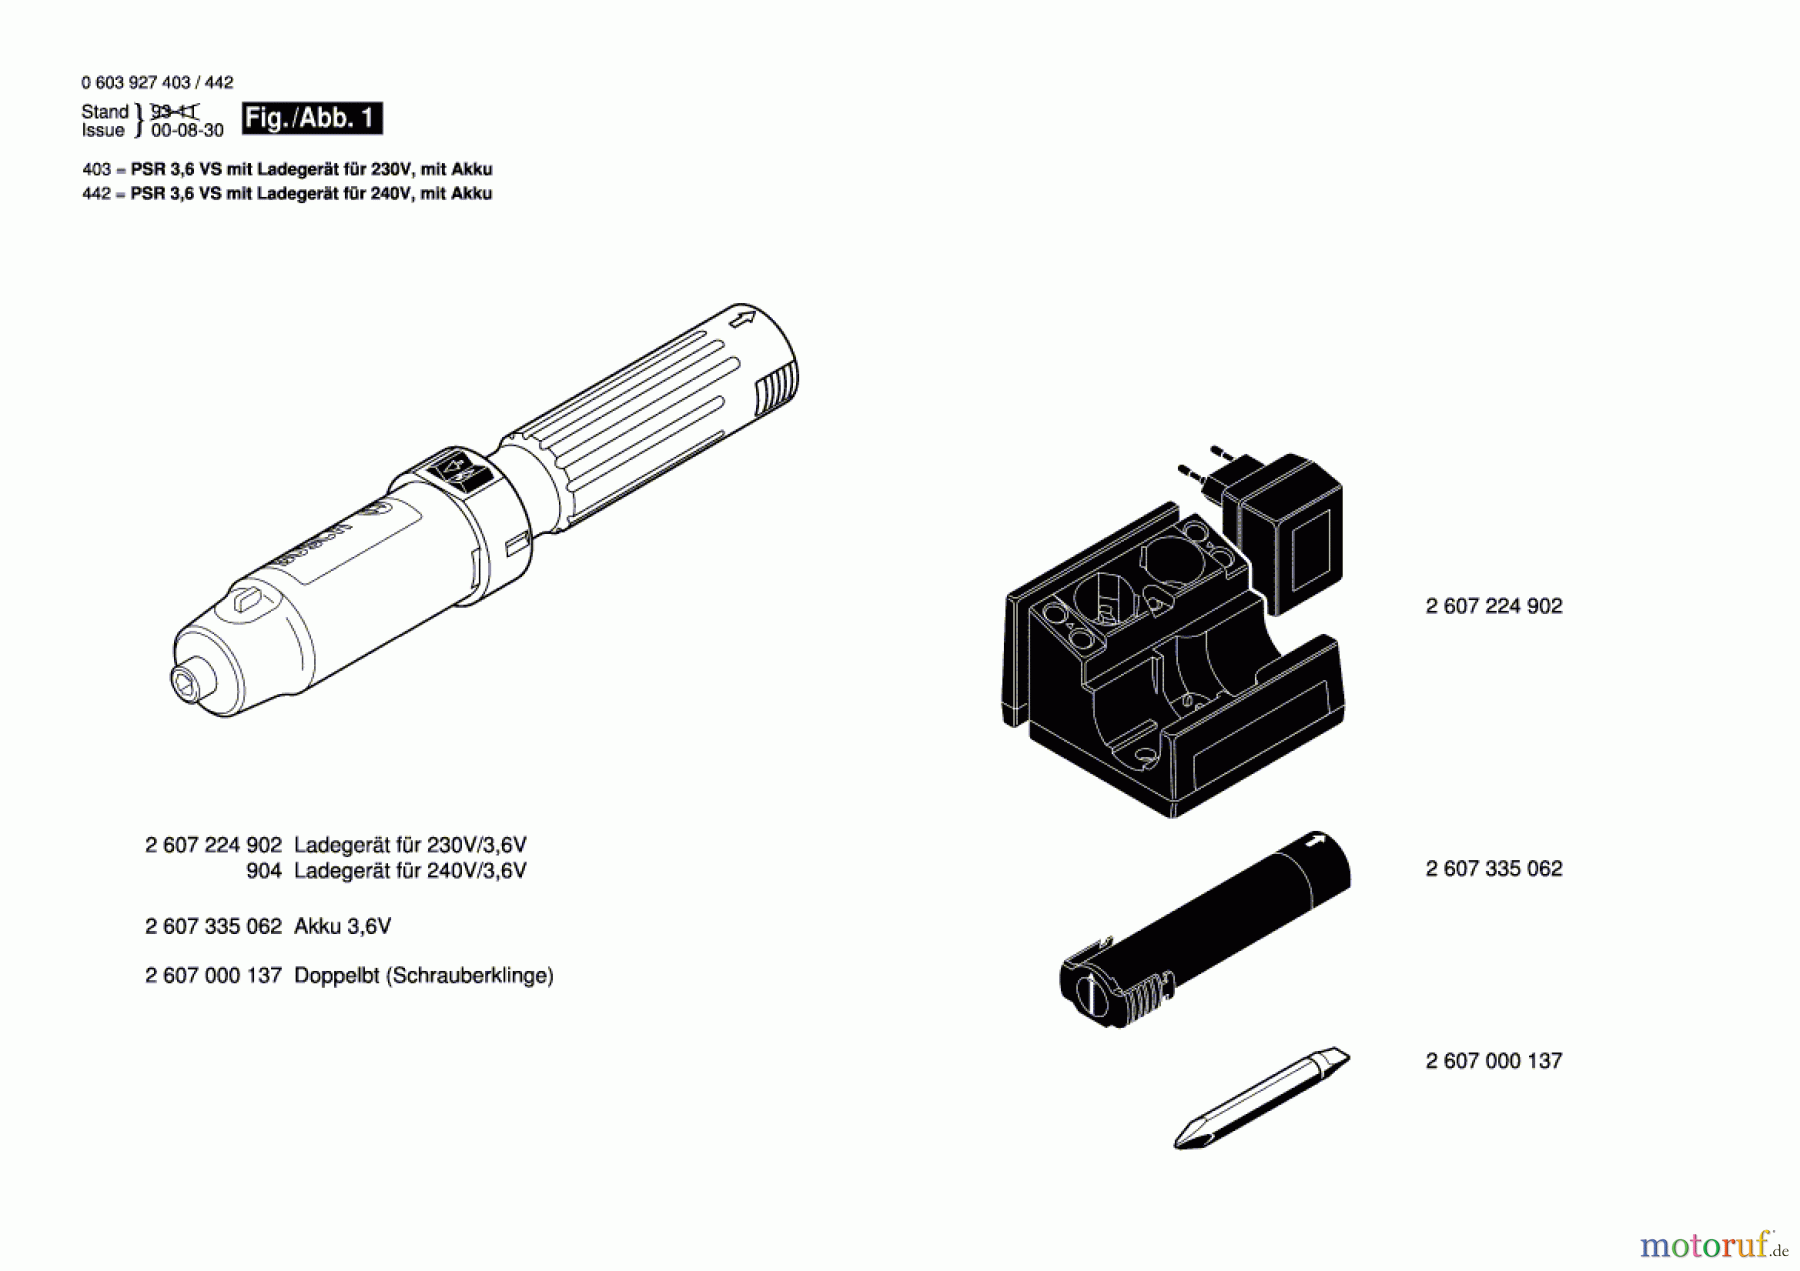  Bosch Akku Werkzeug Akku-Schrauber PSR 3,6 VS Seite 1